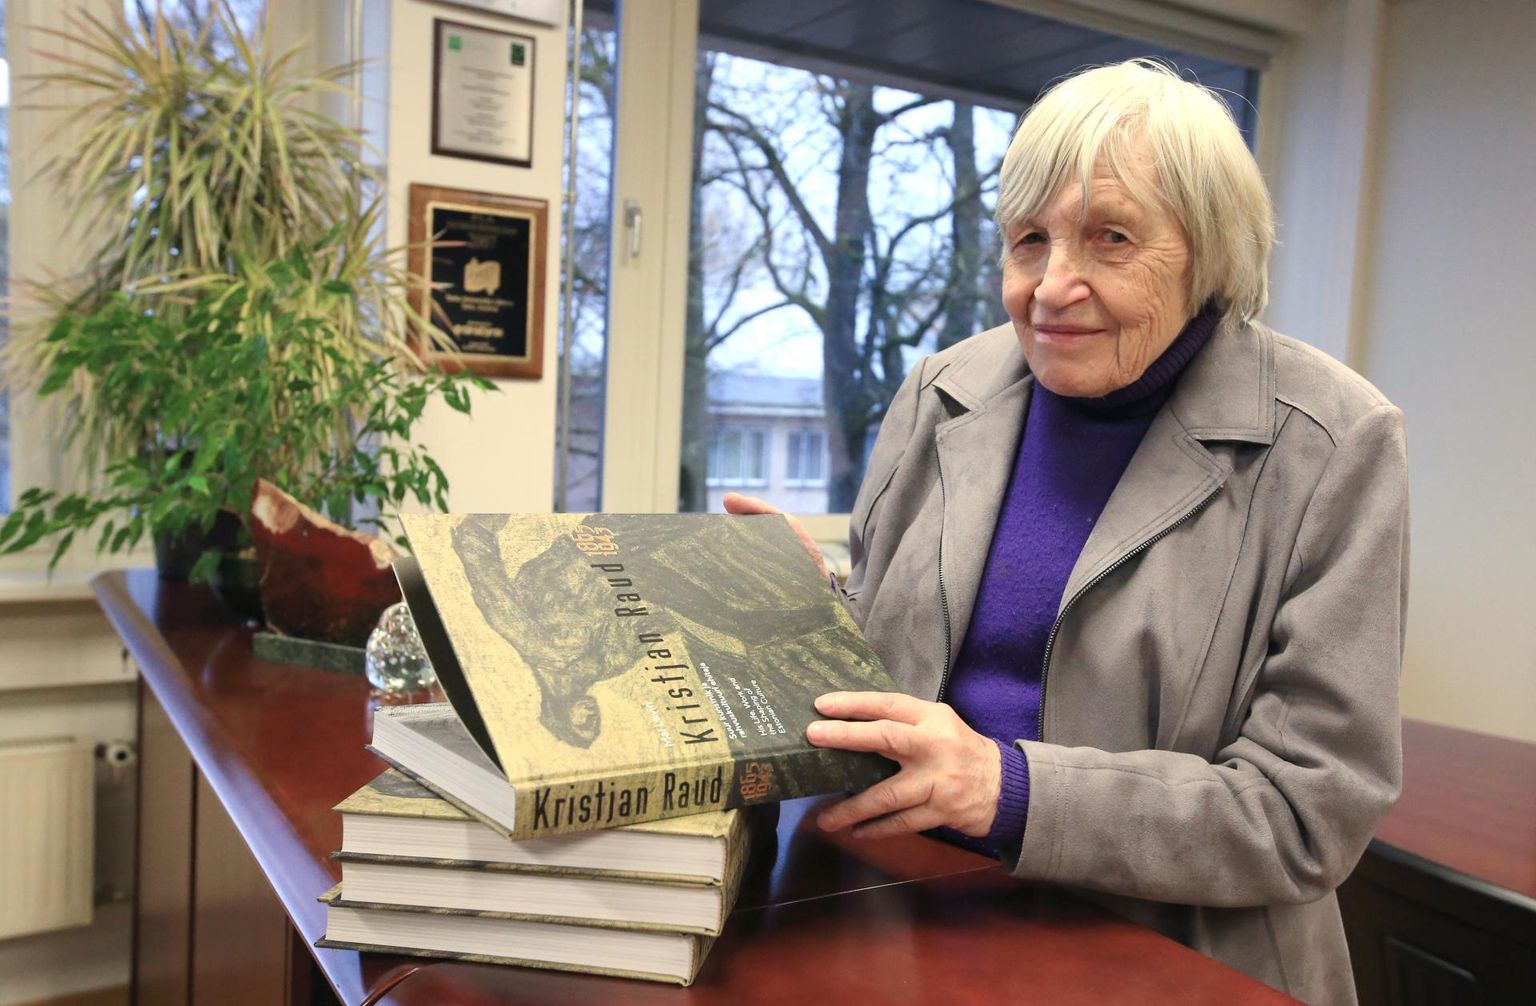 Eesti raamatu- koguhoidjate päevade avamisele Tartu ülikooli raamatukogus oli kutsutud Mai Levin, et ta tutvustaks äsja valminud monograafiat Kristjan Rauast.